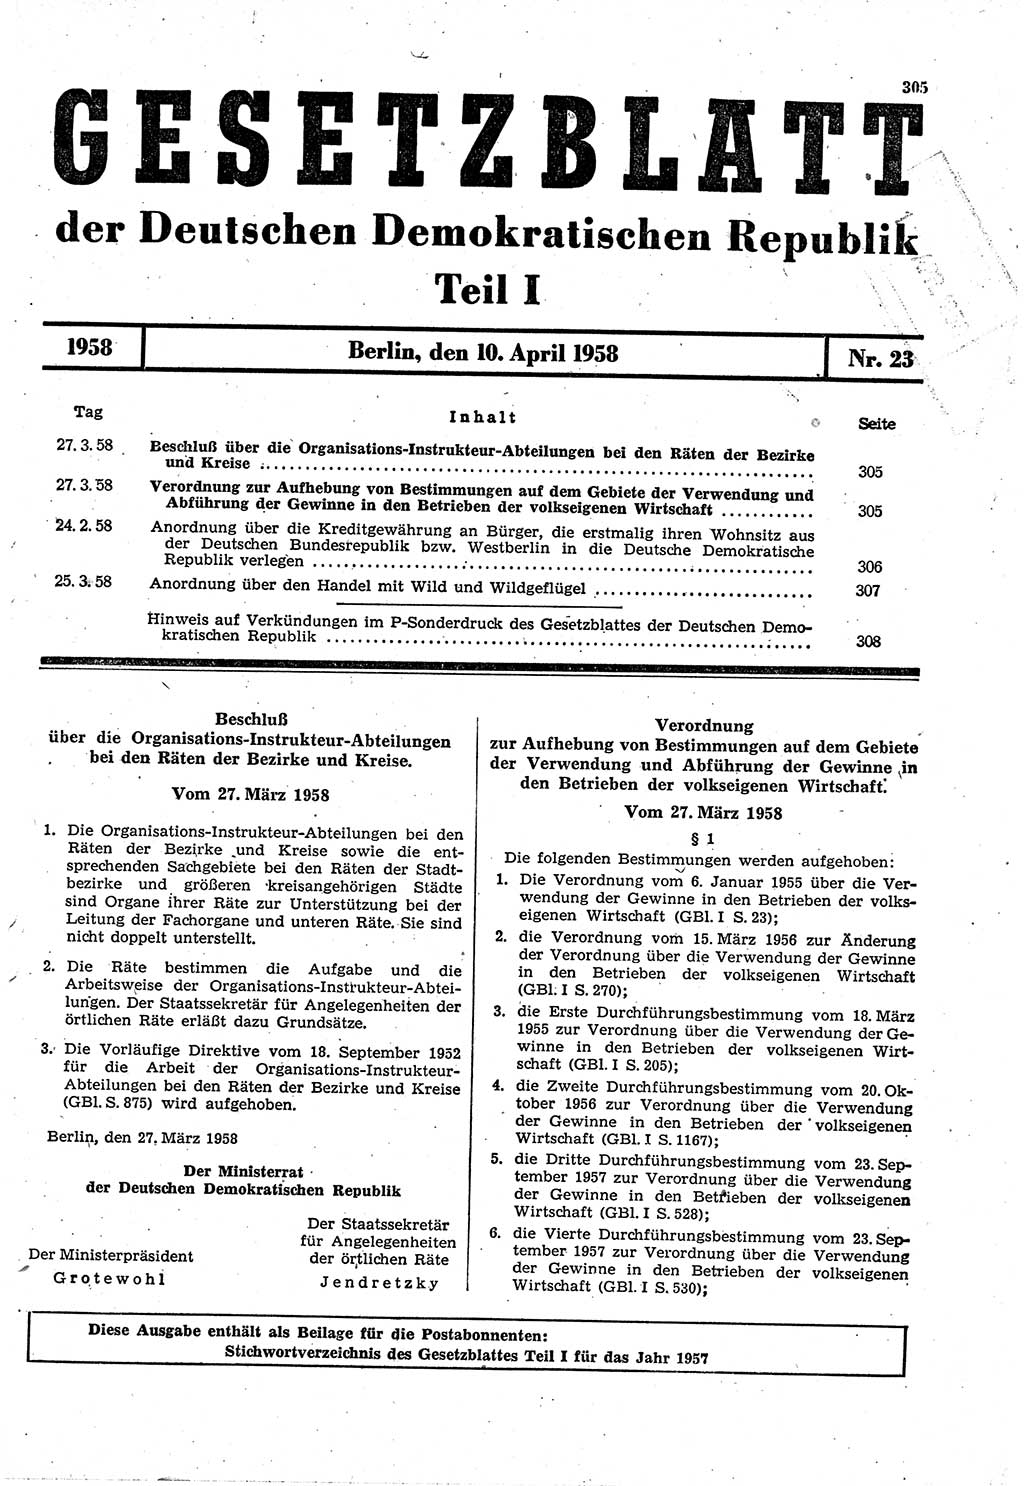 Gesetzblatt (GBl.) der Deutschen Demokratischen Republik (DDR) Teil Ⅰ 1958, Seite 305 (GBl. DDR Ⅰ 1958, S. 305)